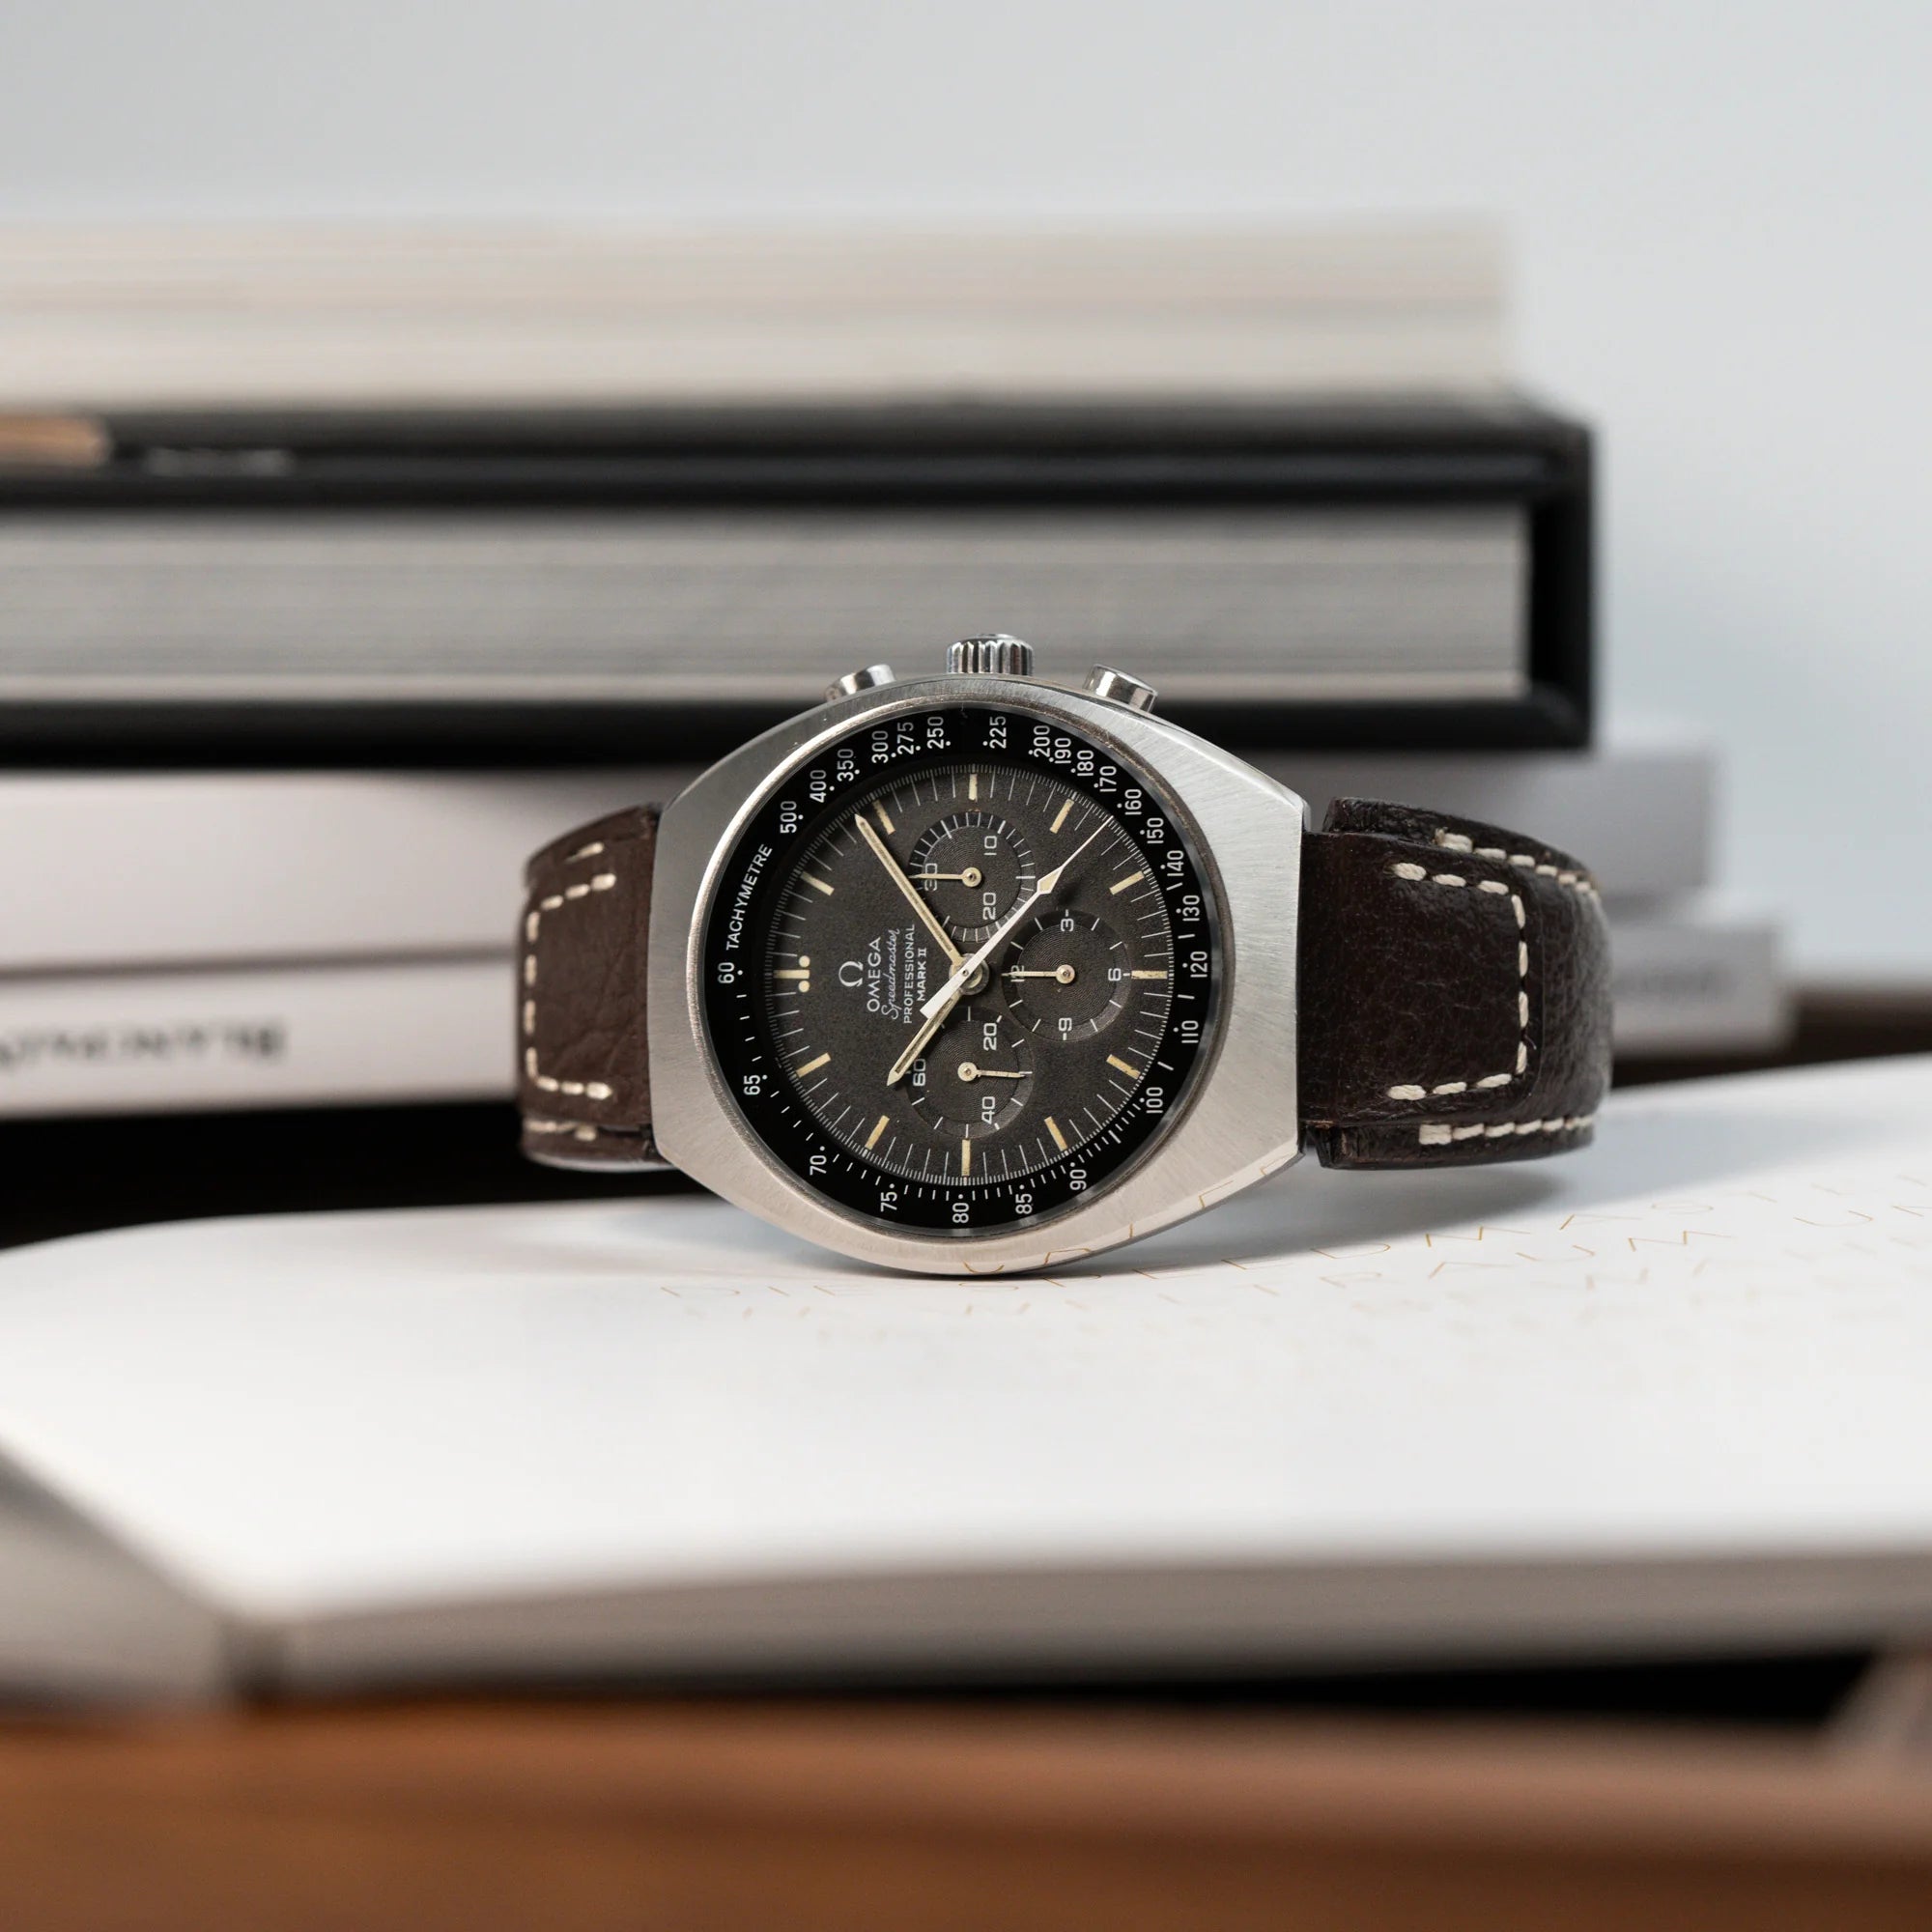 Produktfotografie der liegenden Omega Speedmaster Moonwatch Mark 2 an einem braunen Lederarmband